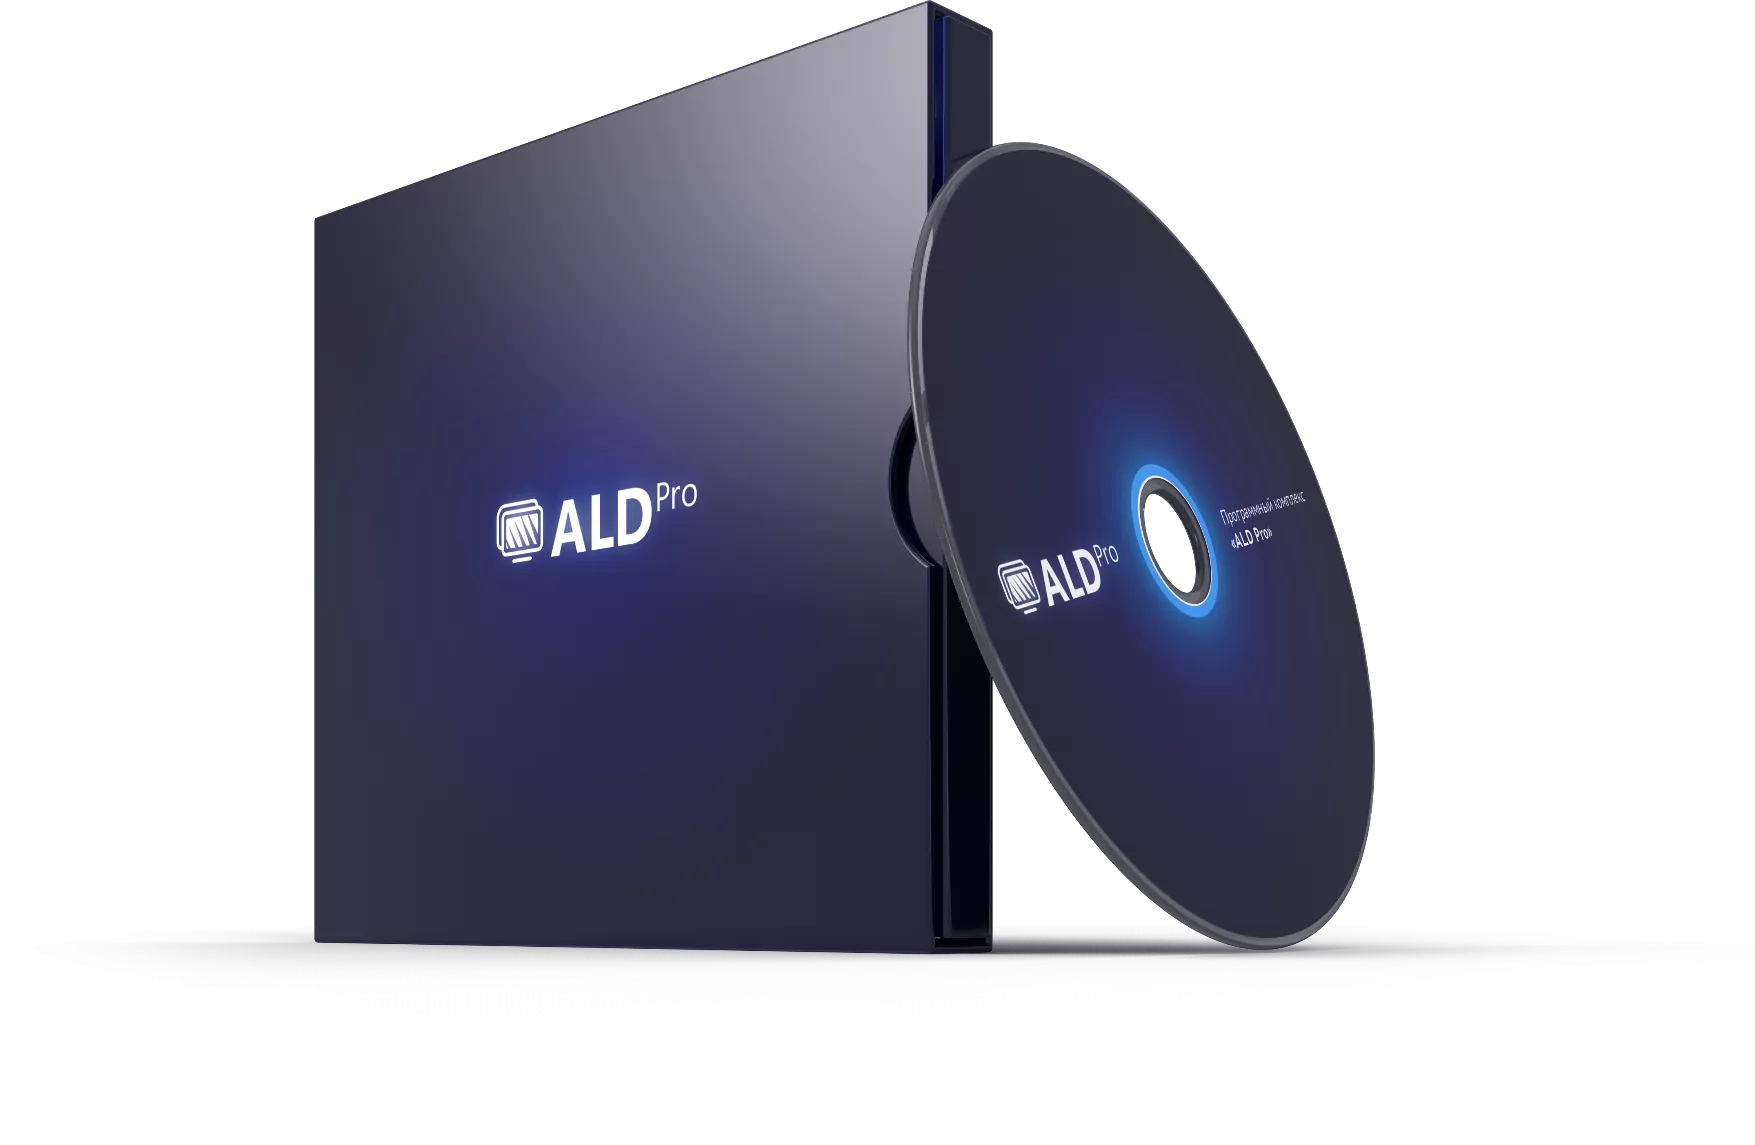 ALD Pro РДЦП.10101-01, электронный, бессрочная, с включенной ТП "Привилегированная" на 12 мес.